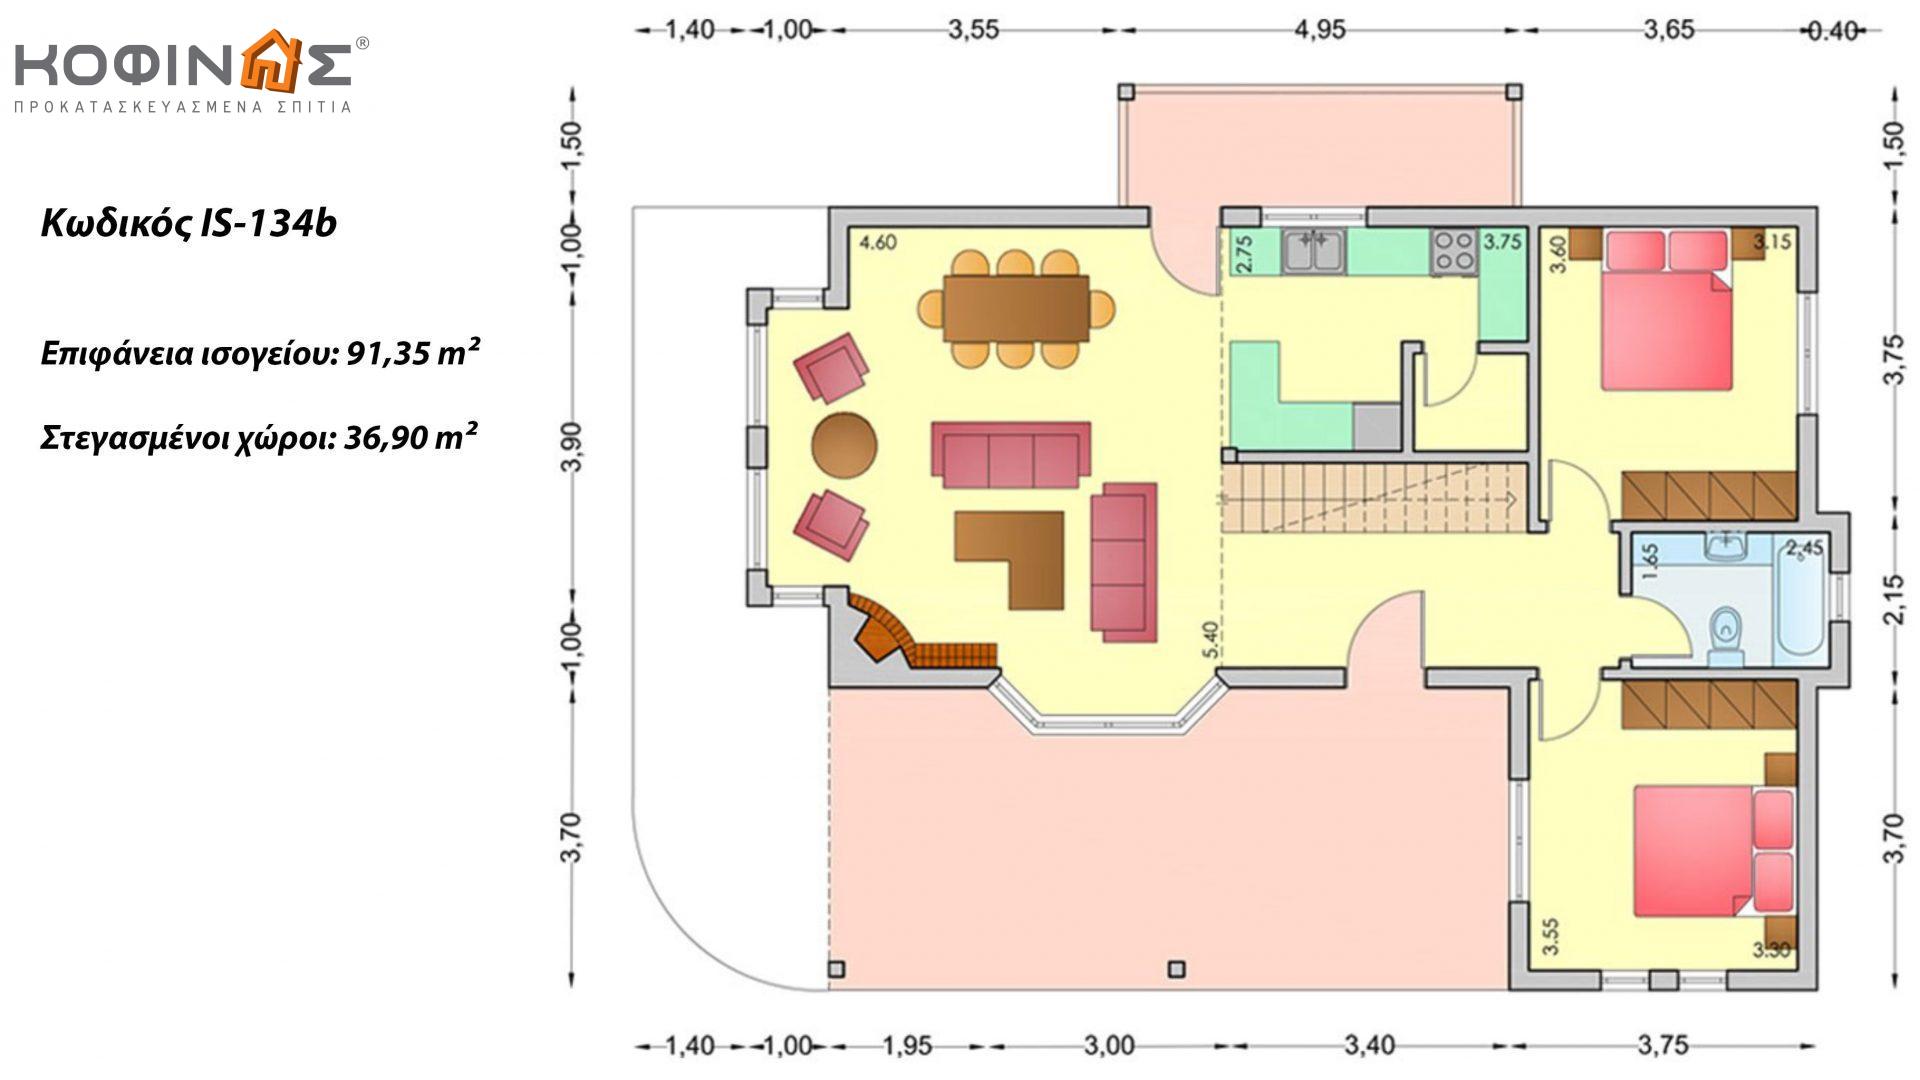 Ισόγεια Κατοικία με Σοφίτα IS-134b, συνολικής επιφάνειας 134,25 τ.μ. ,συνολική επιφάνεια στεγασμένων χώρων 36,90 τ.μ.